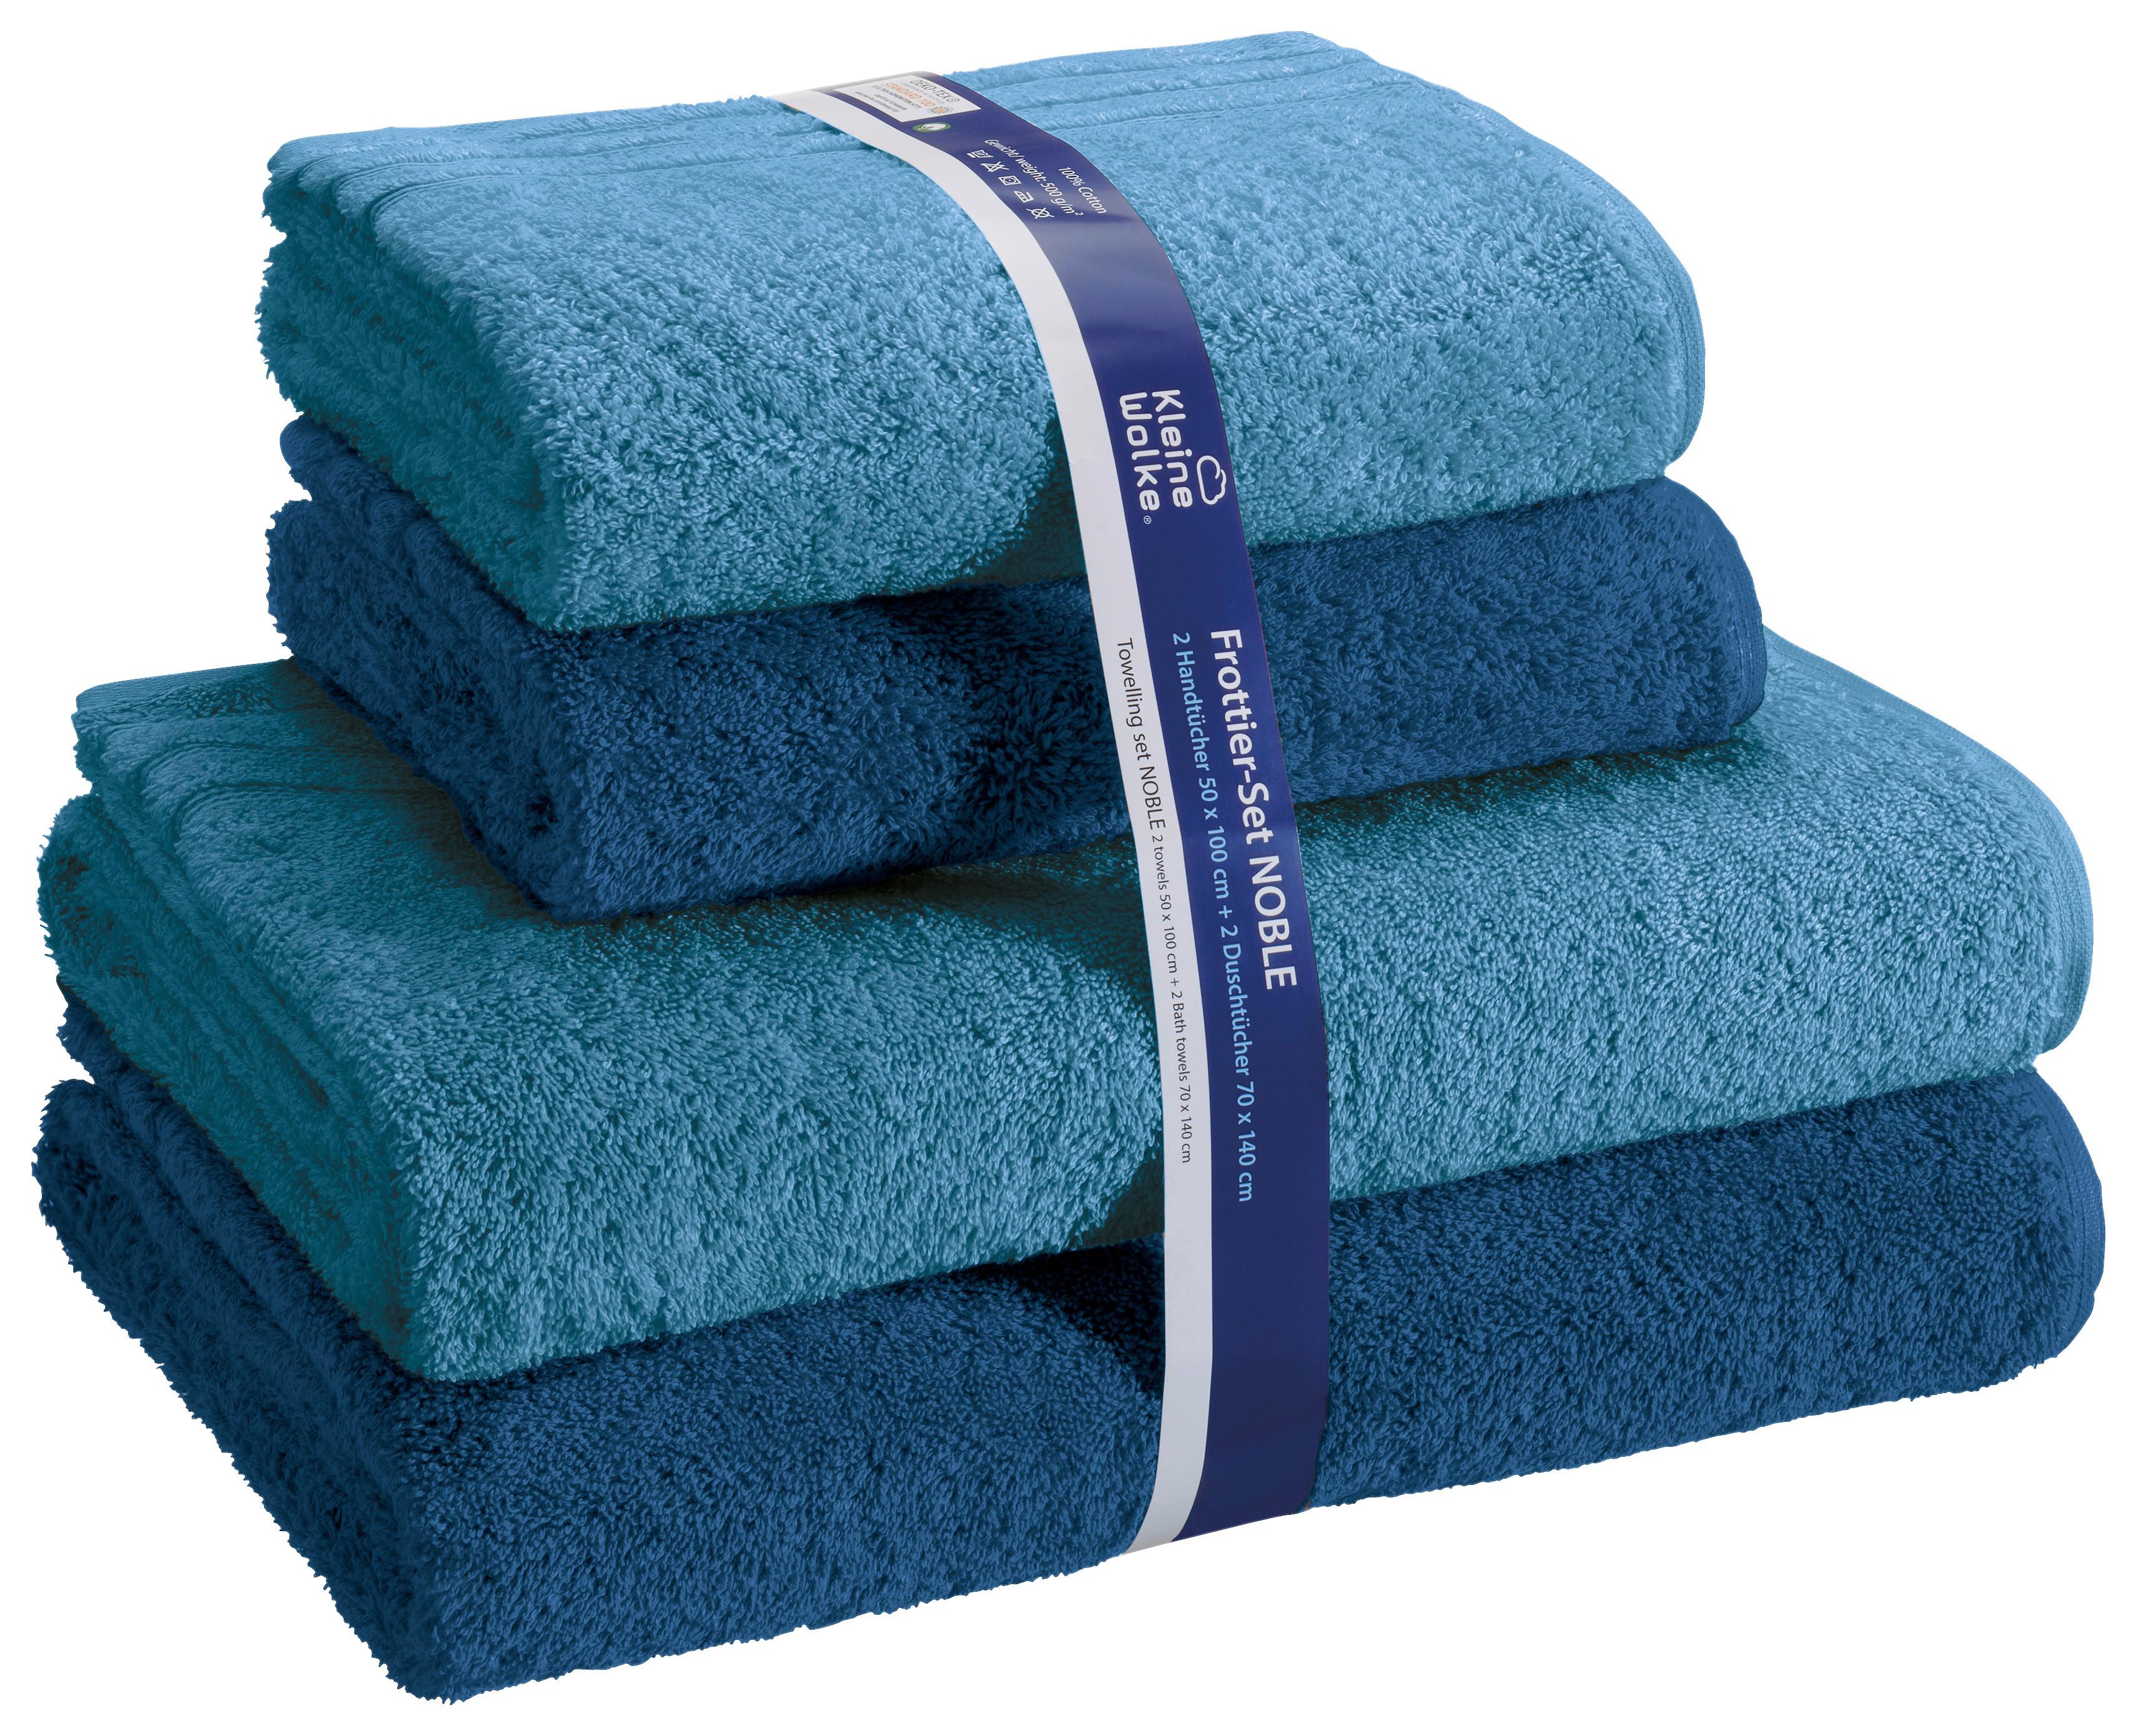 Handtuch Set Noble Baumwolle Blau/Dunkelblau 4-Er Pack - Blau, KONVENTIONELL, Textil (24/24/36cm) - Kleine Wolke